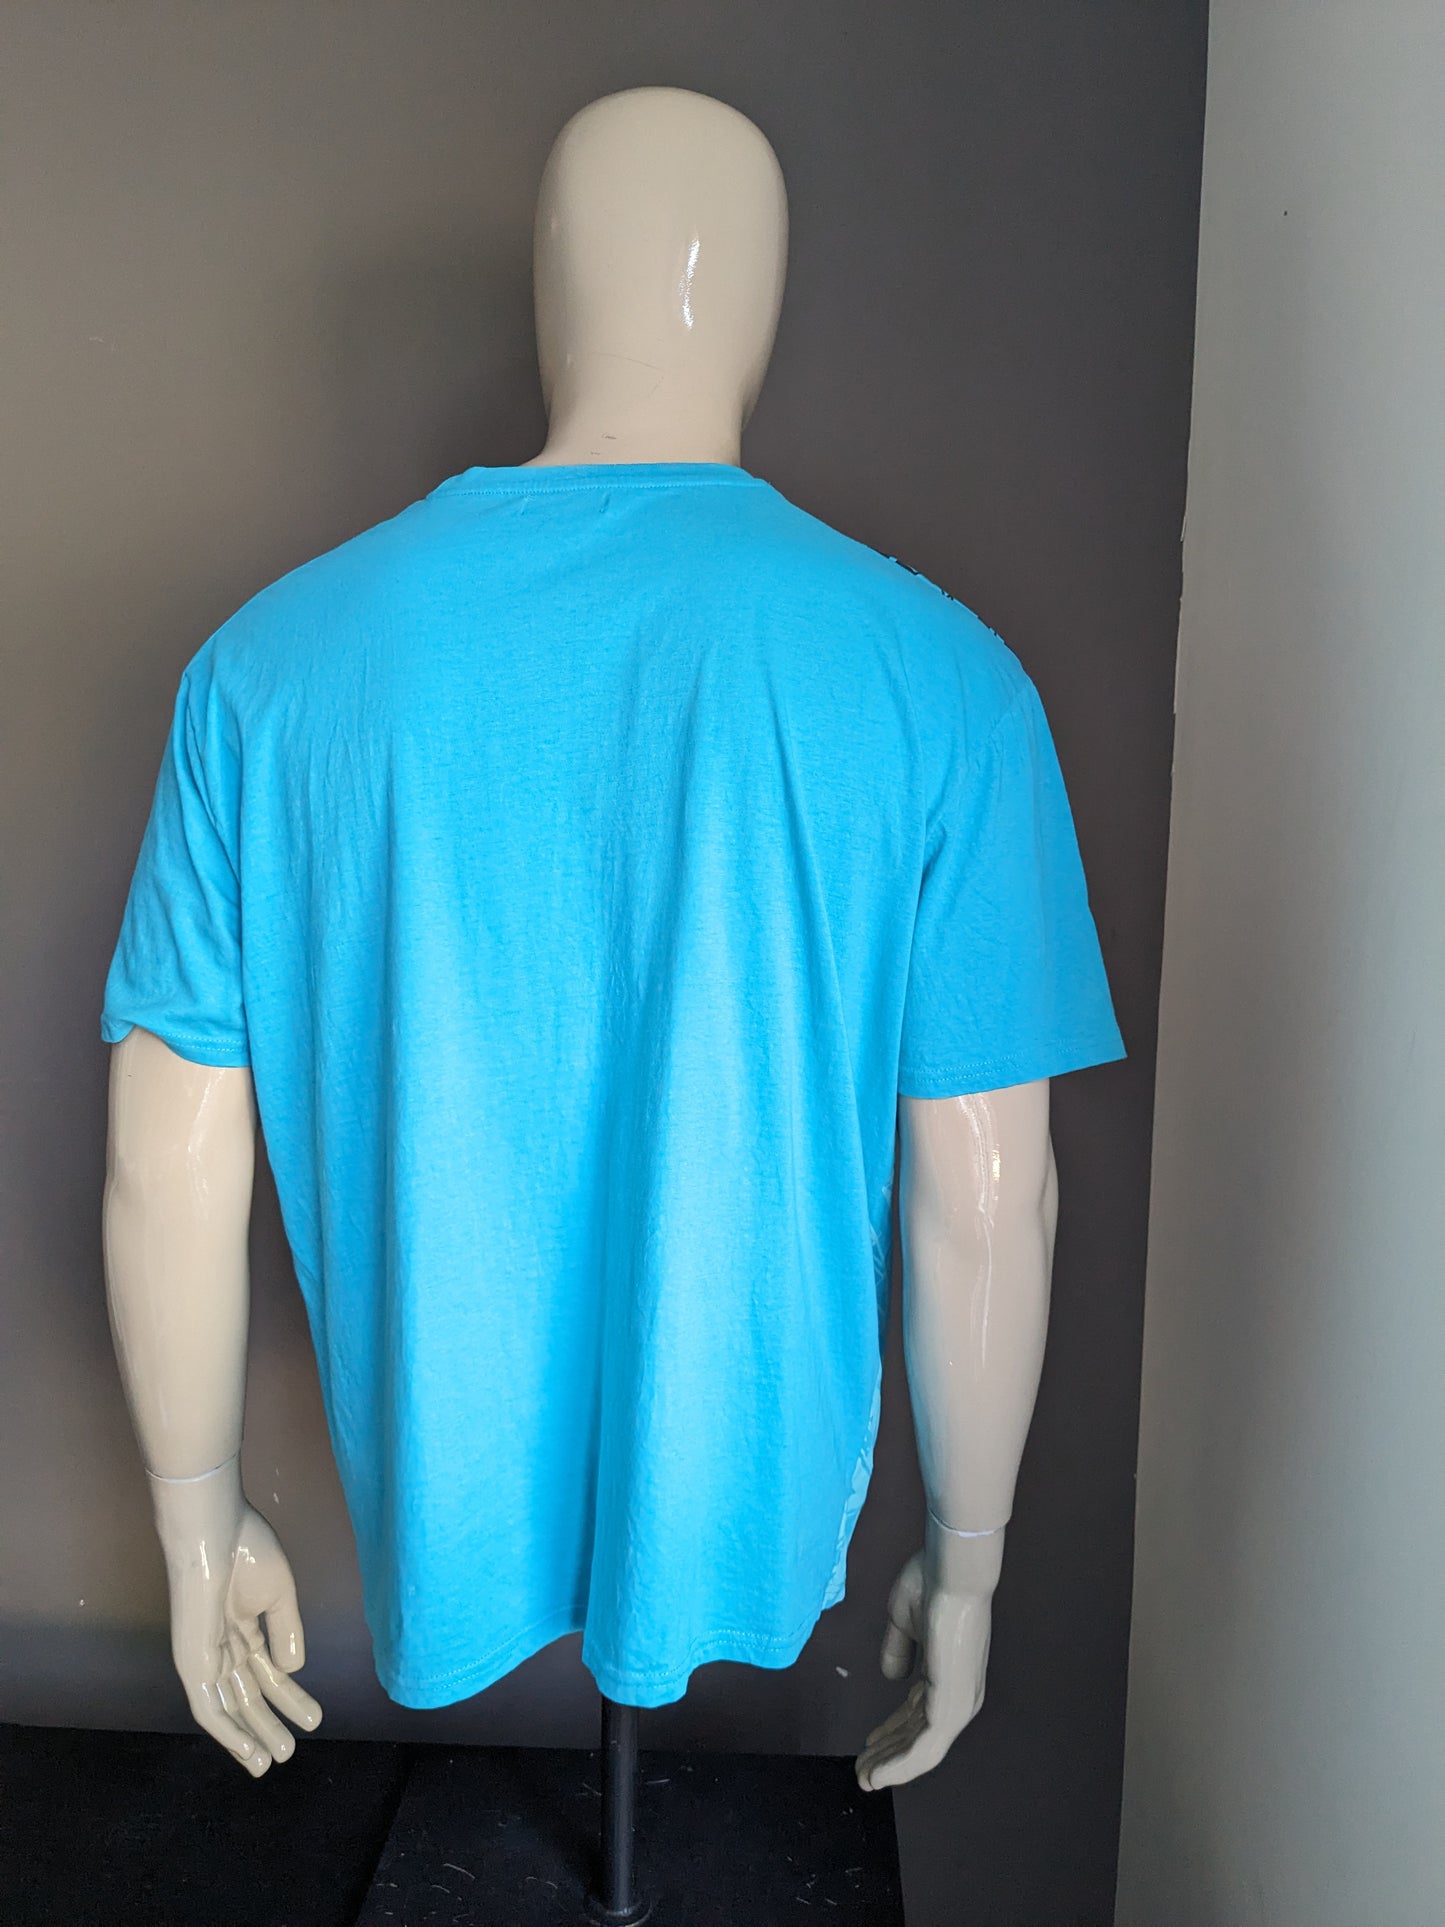 Atlas for Men shirt. Blauw met opdruk. Maat 3XL / XXXL.